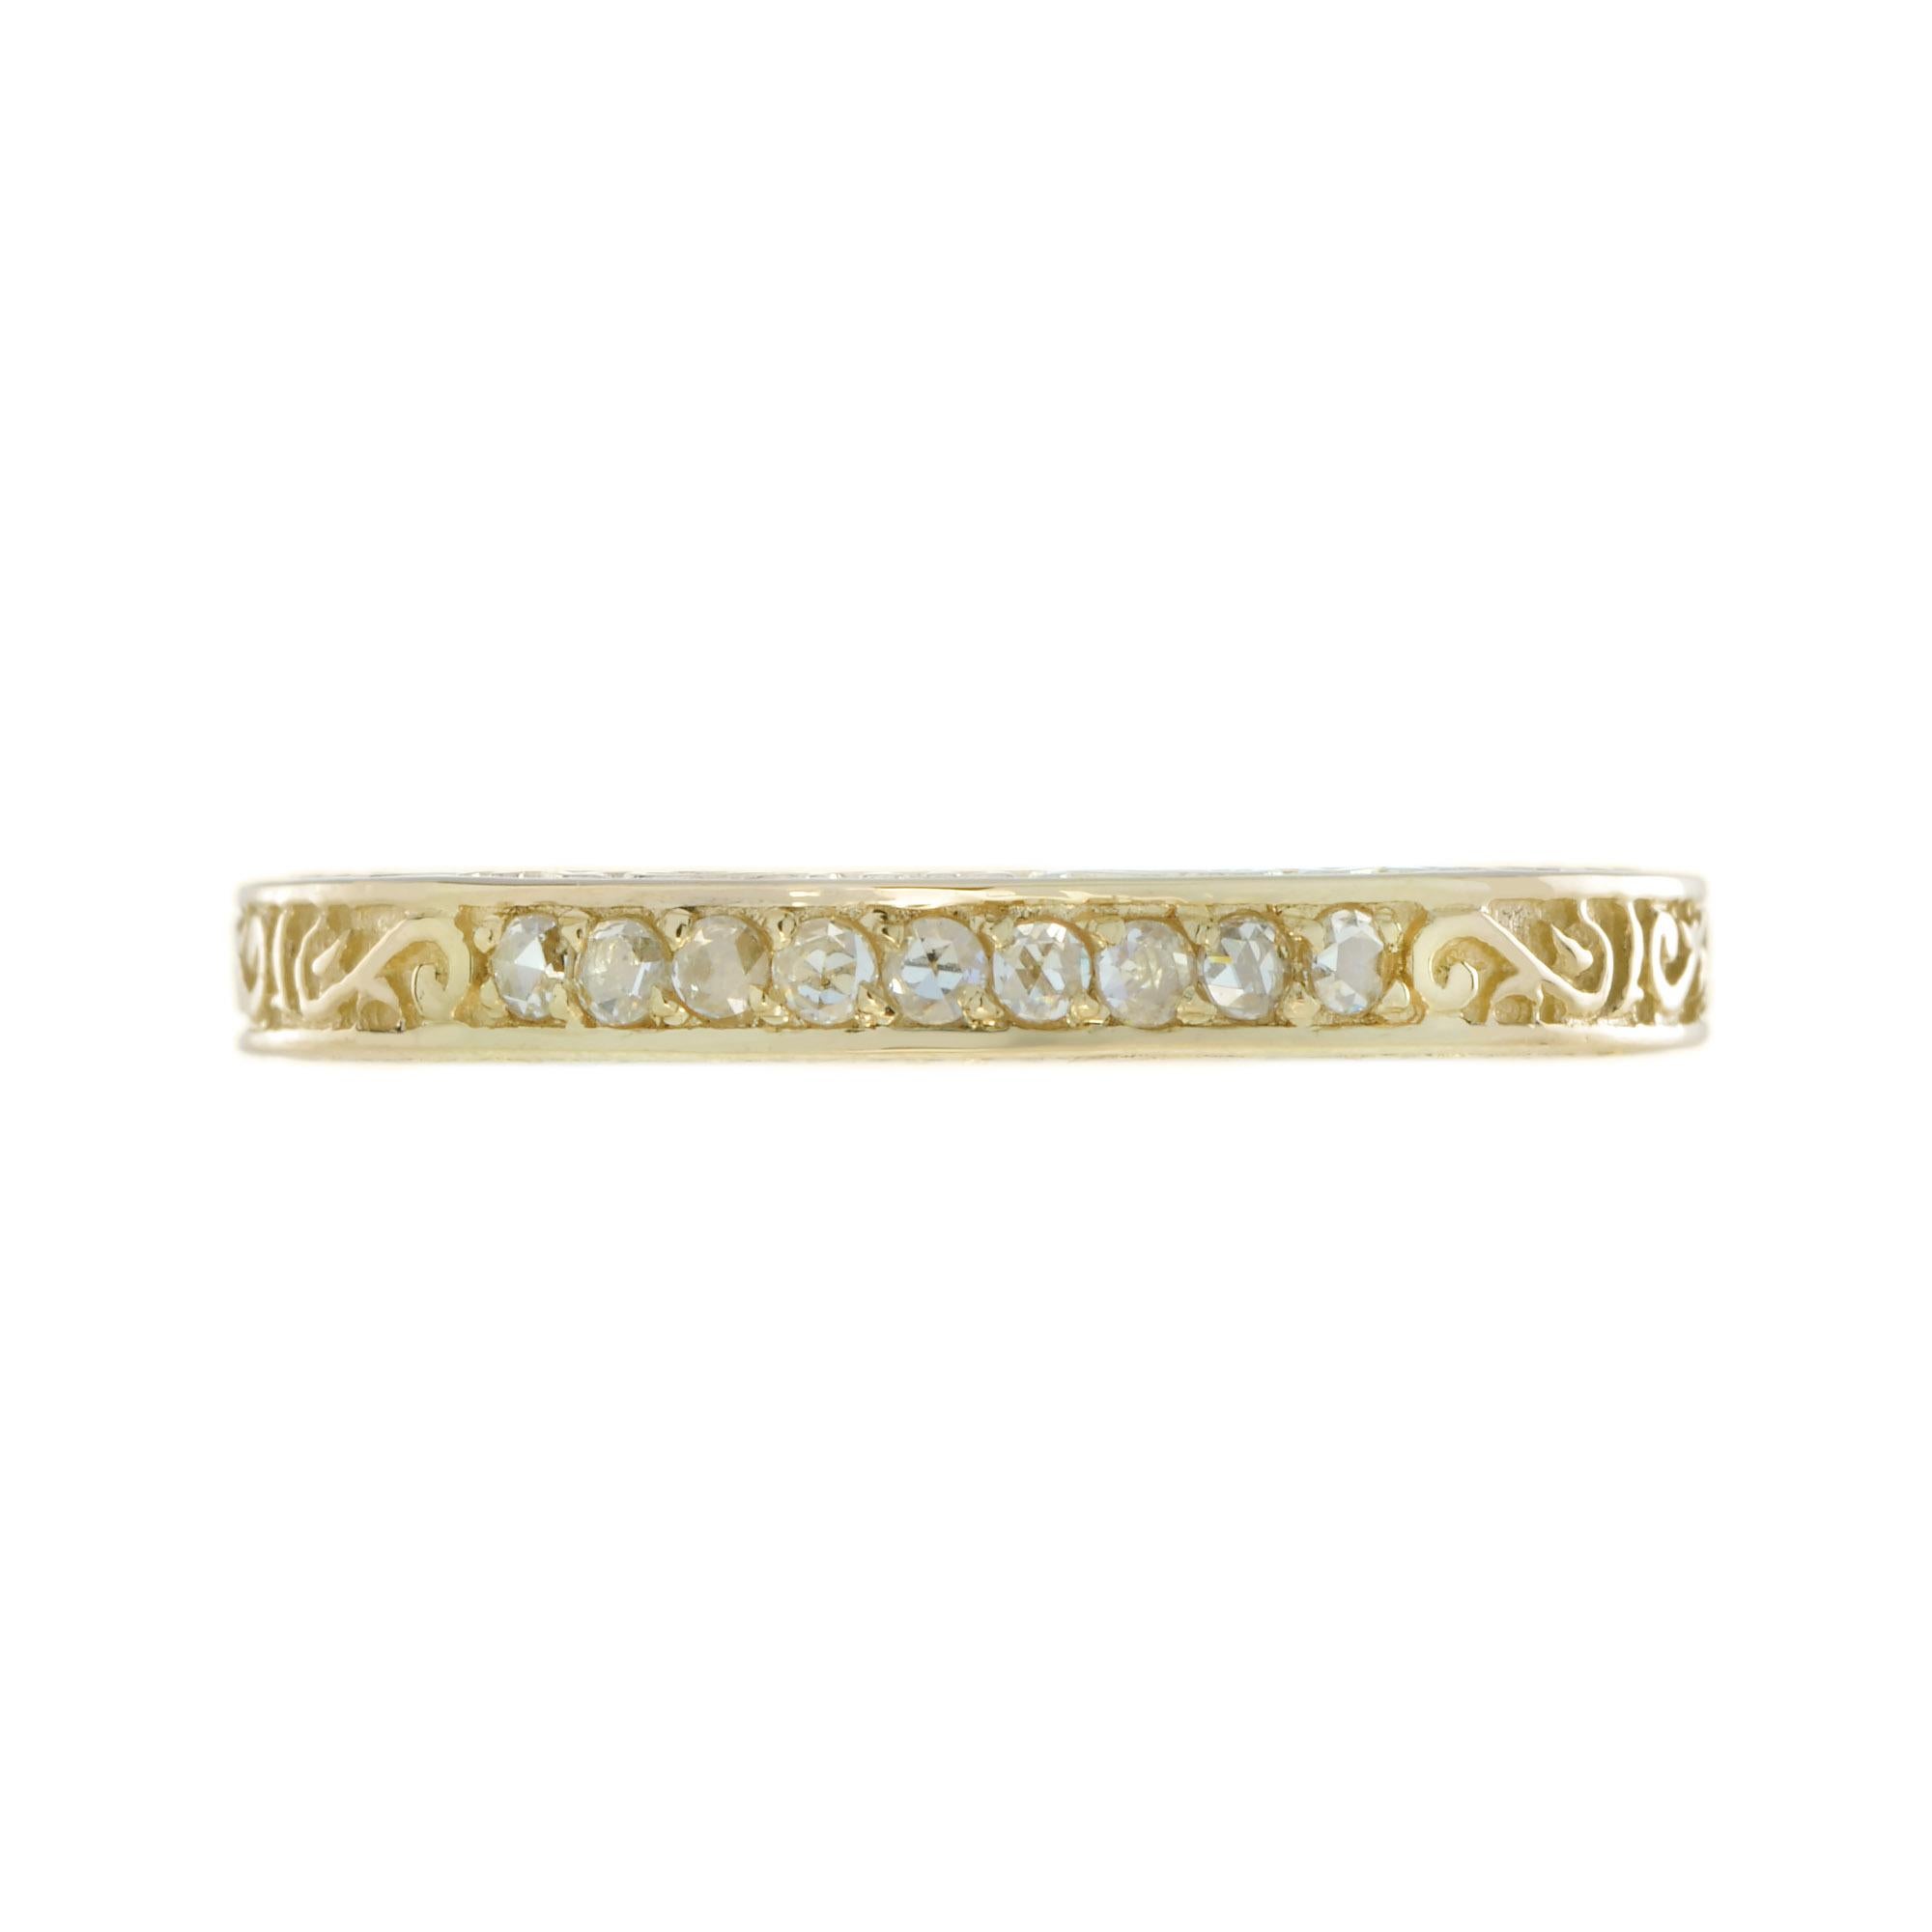 Dies ist eine schöne viktorianischen Ära Design Band Ring in 14k Gelbgold. Es ist mit neun Diamanten im Rosenschliff besetzt, geschätztes Gesamtgewicht ist 0,14 Karat H Farbe, SI Klarheit insgesamt. Wunderschönes Band aus Gelbgold mit eingraviertem